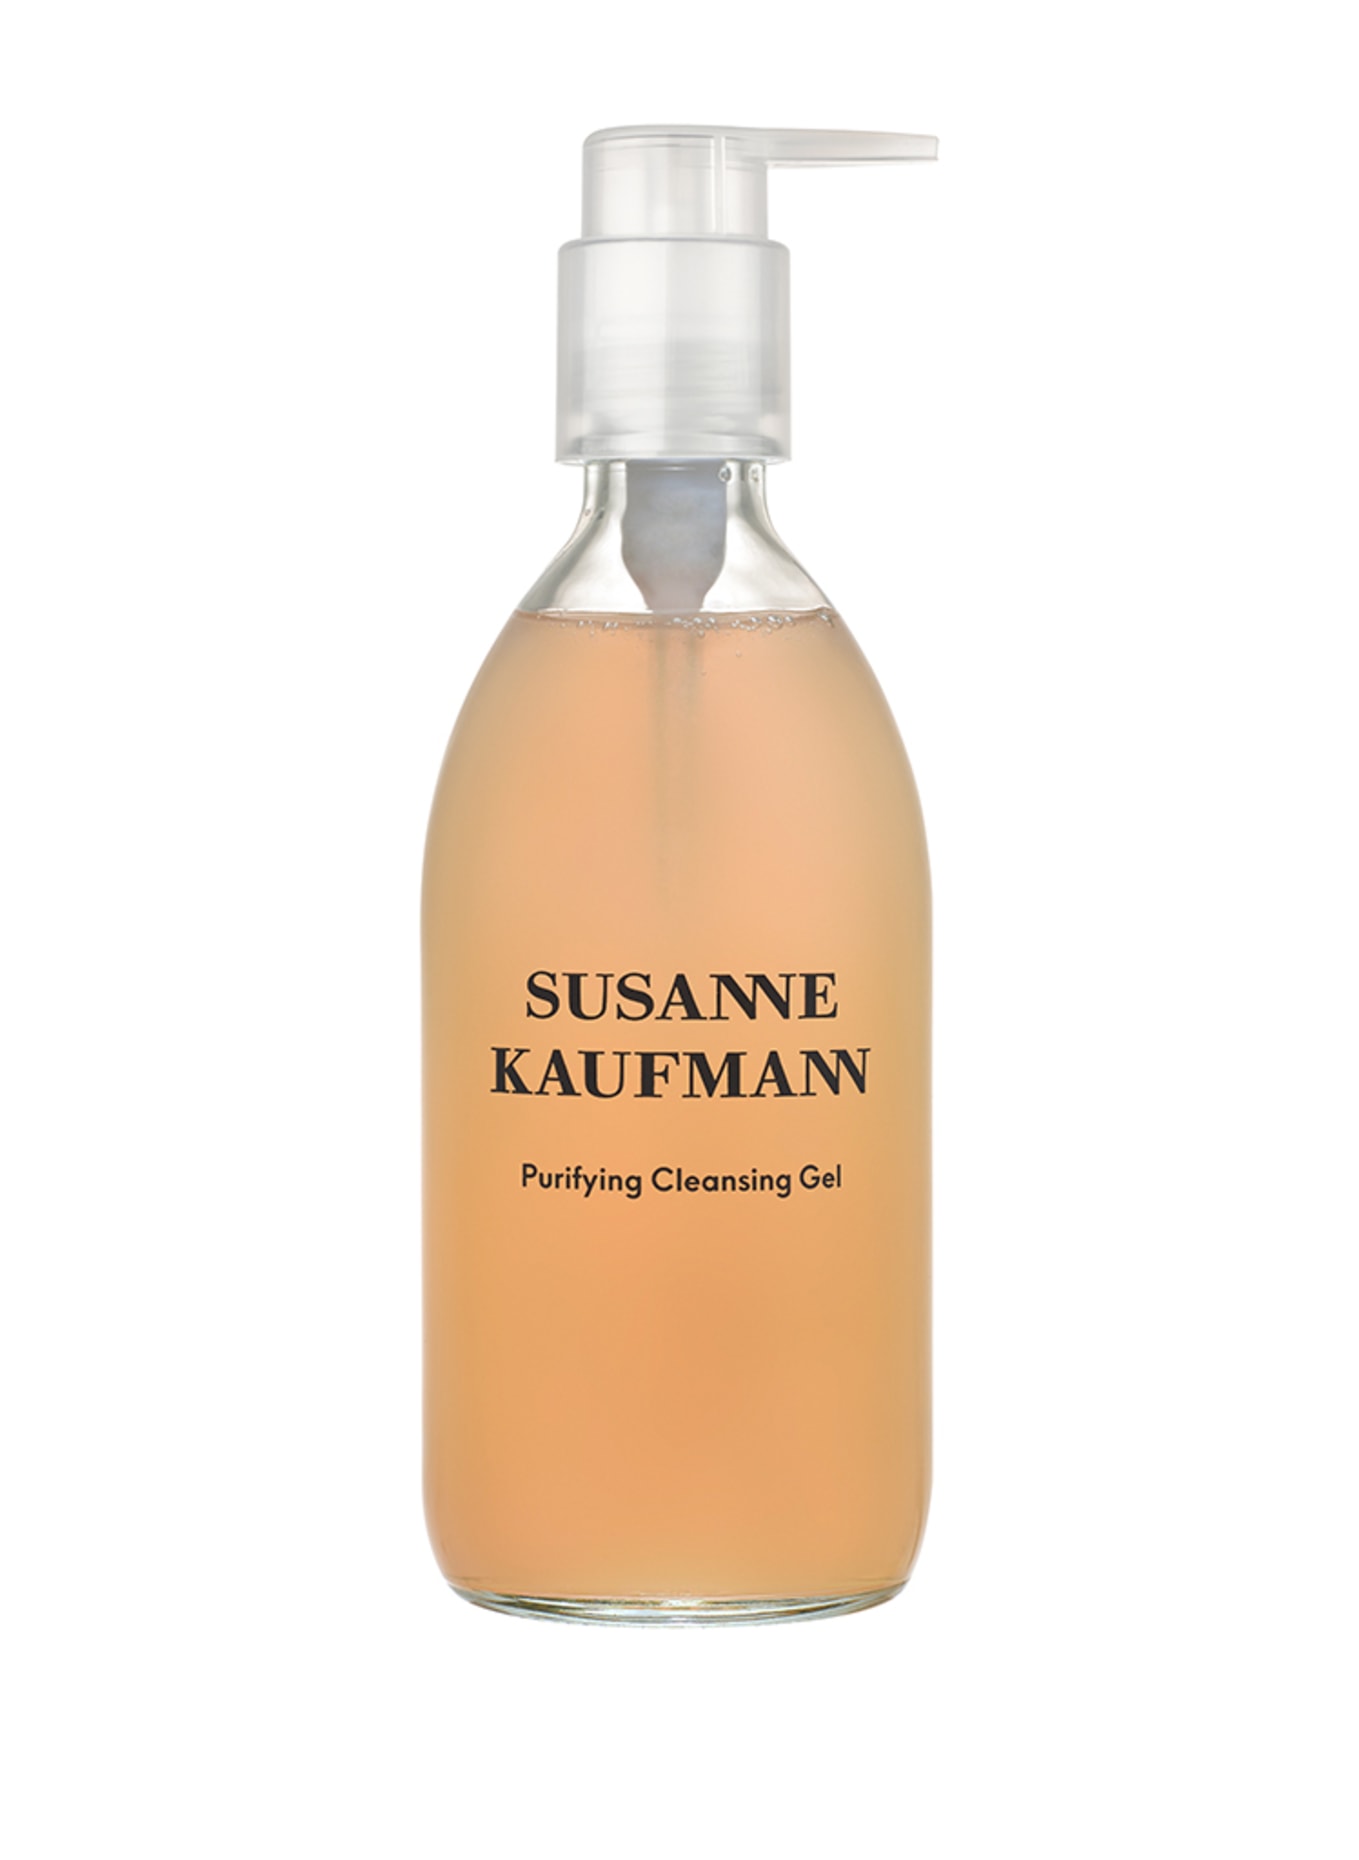 SUSANNE KAUFMANN PURIFYING CLEANSING GEL (Obrázek 1)